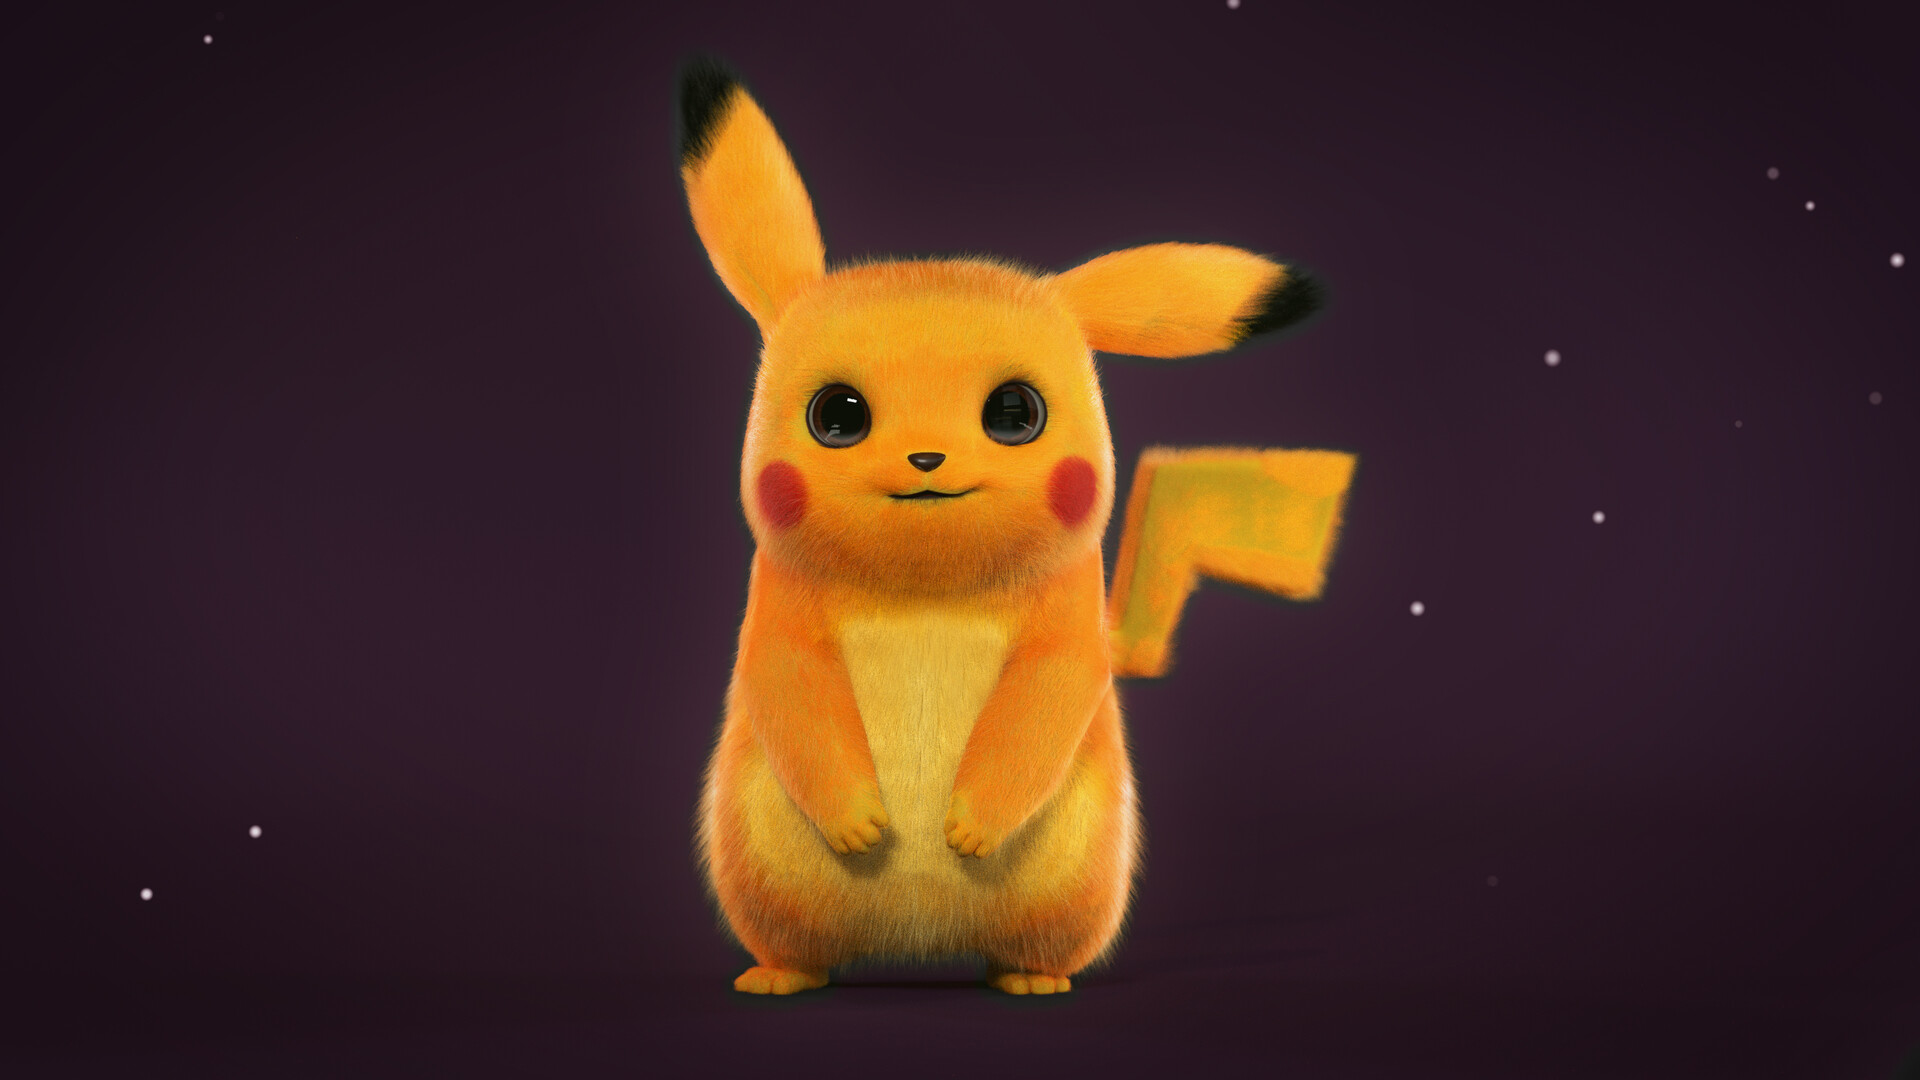 Free Download Pikachu 3d Model Blendernation